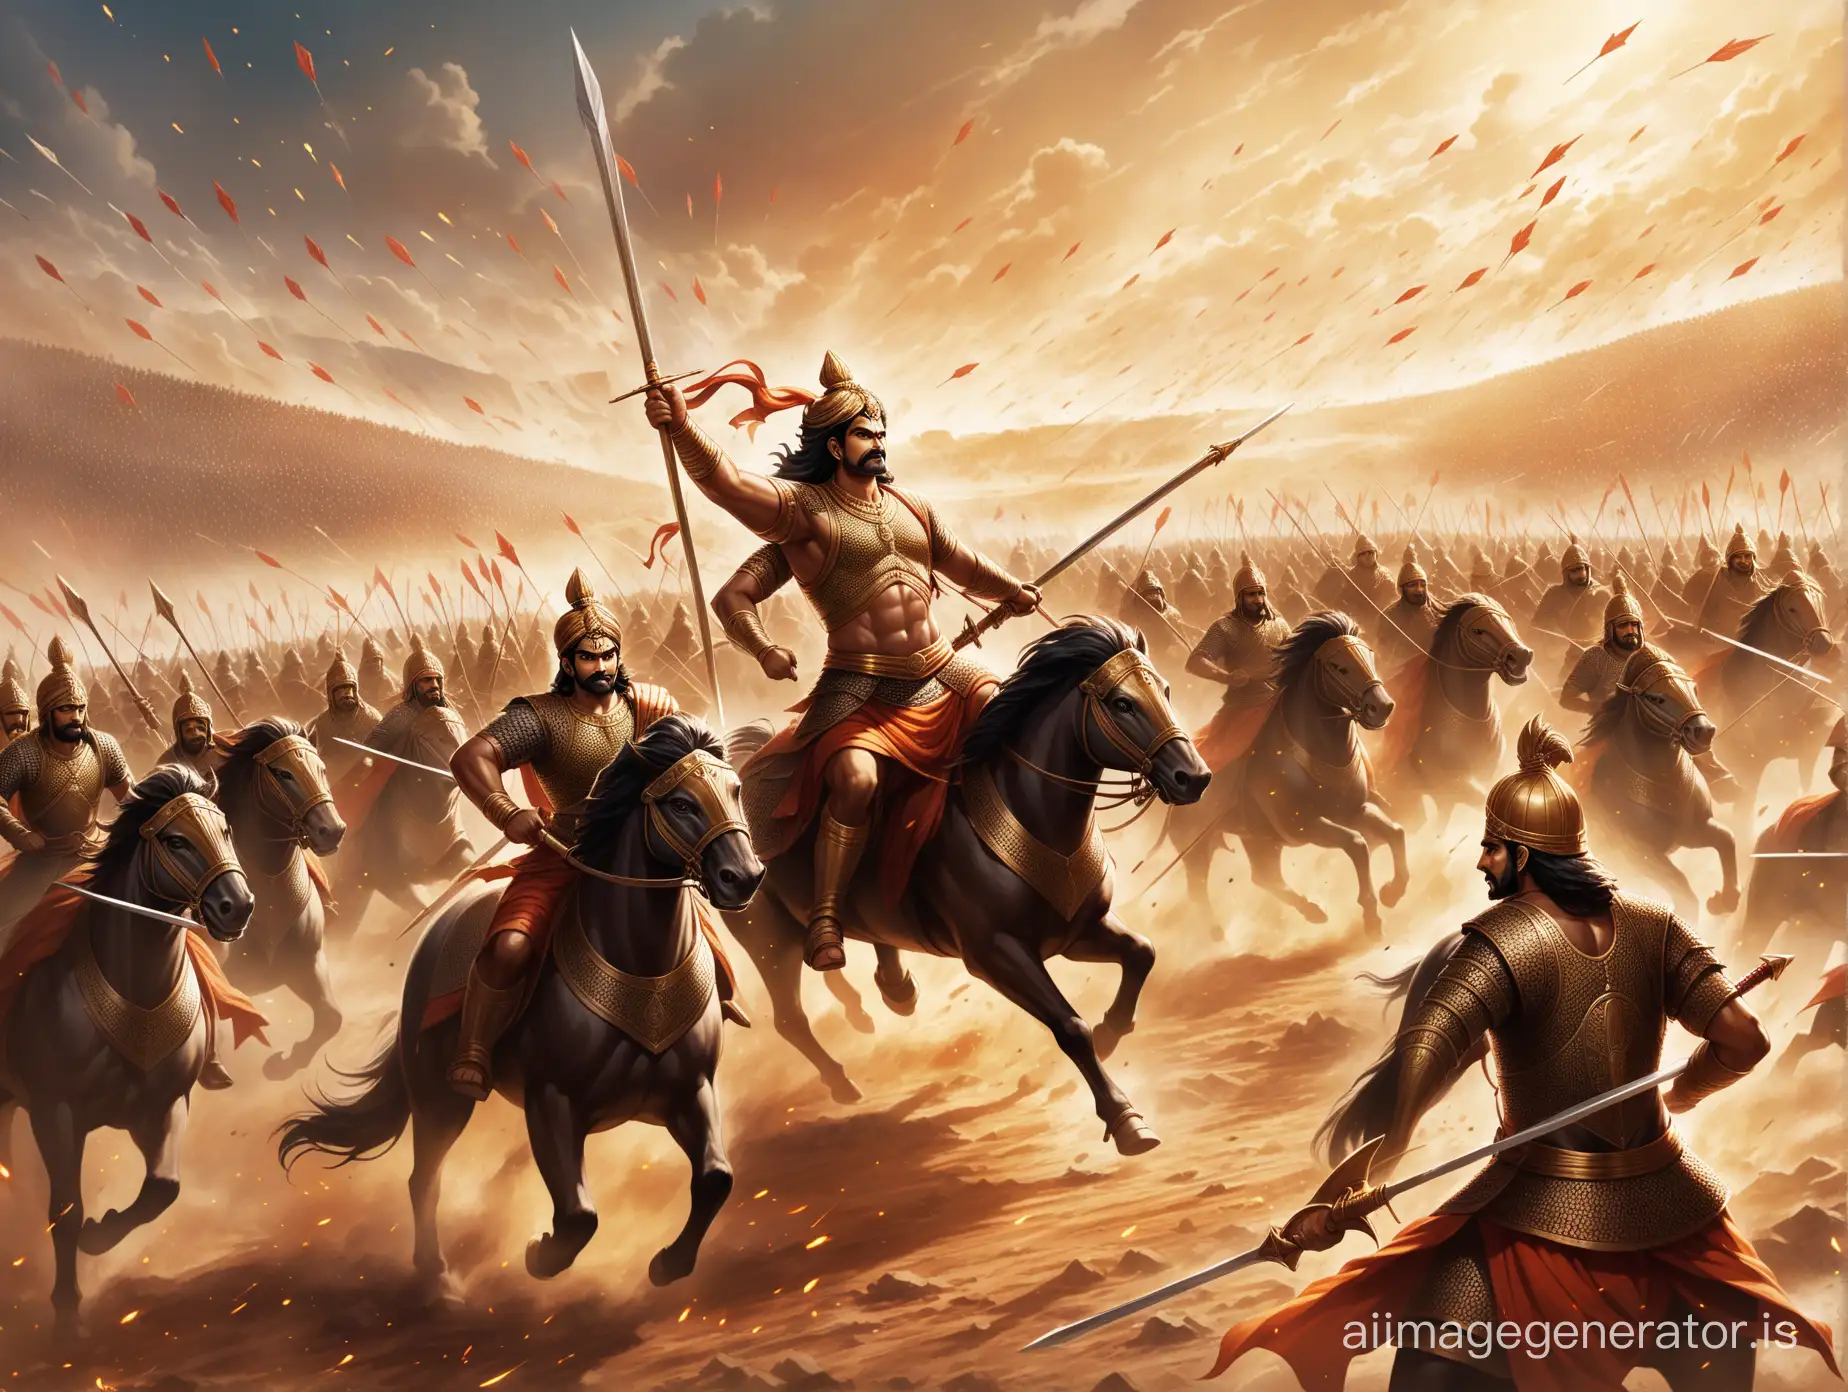 Epic-Battle-King-Arjun-Leads-Warriors-in-Fierce-Conflict